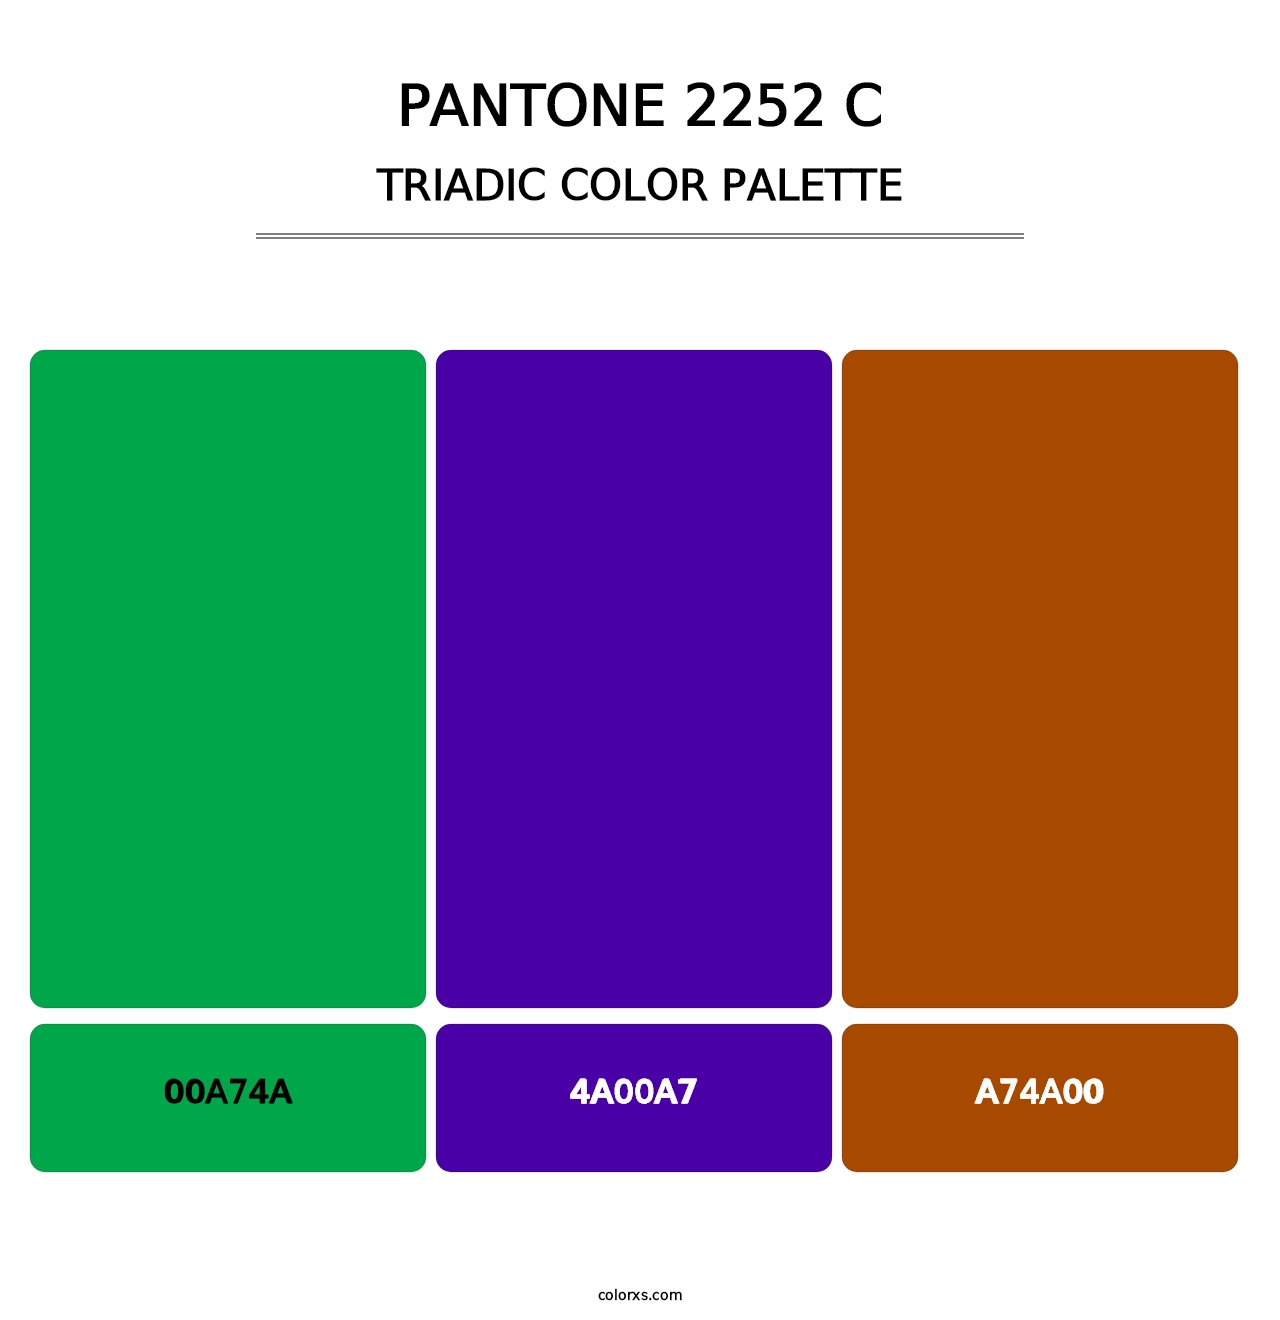 PANTONE 2252 C - Triadic Color Palette